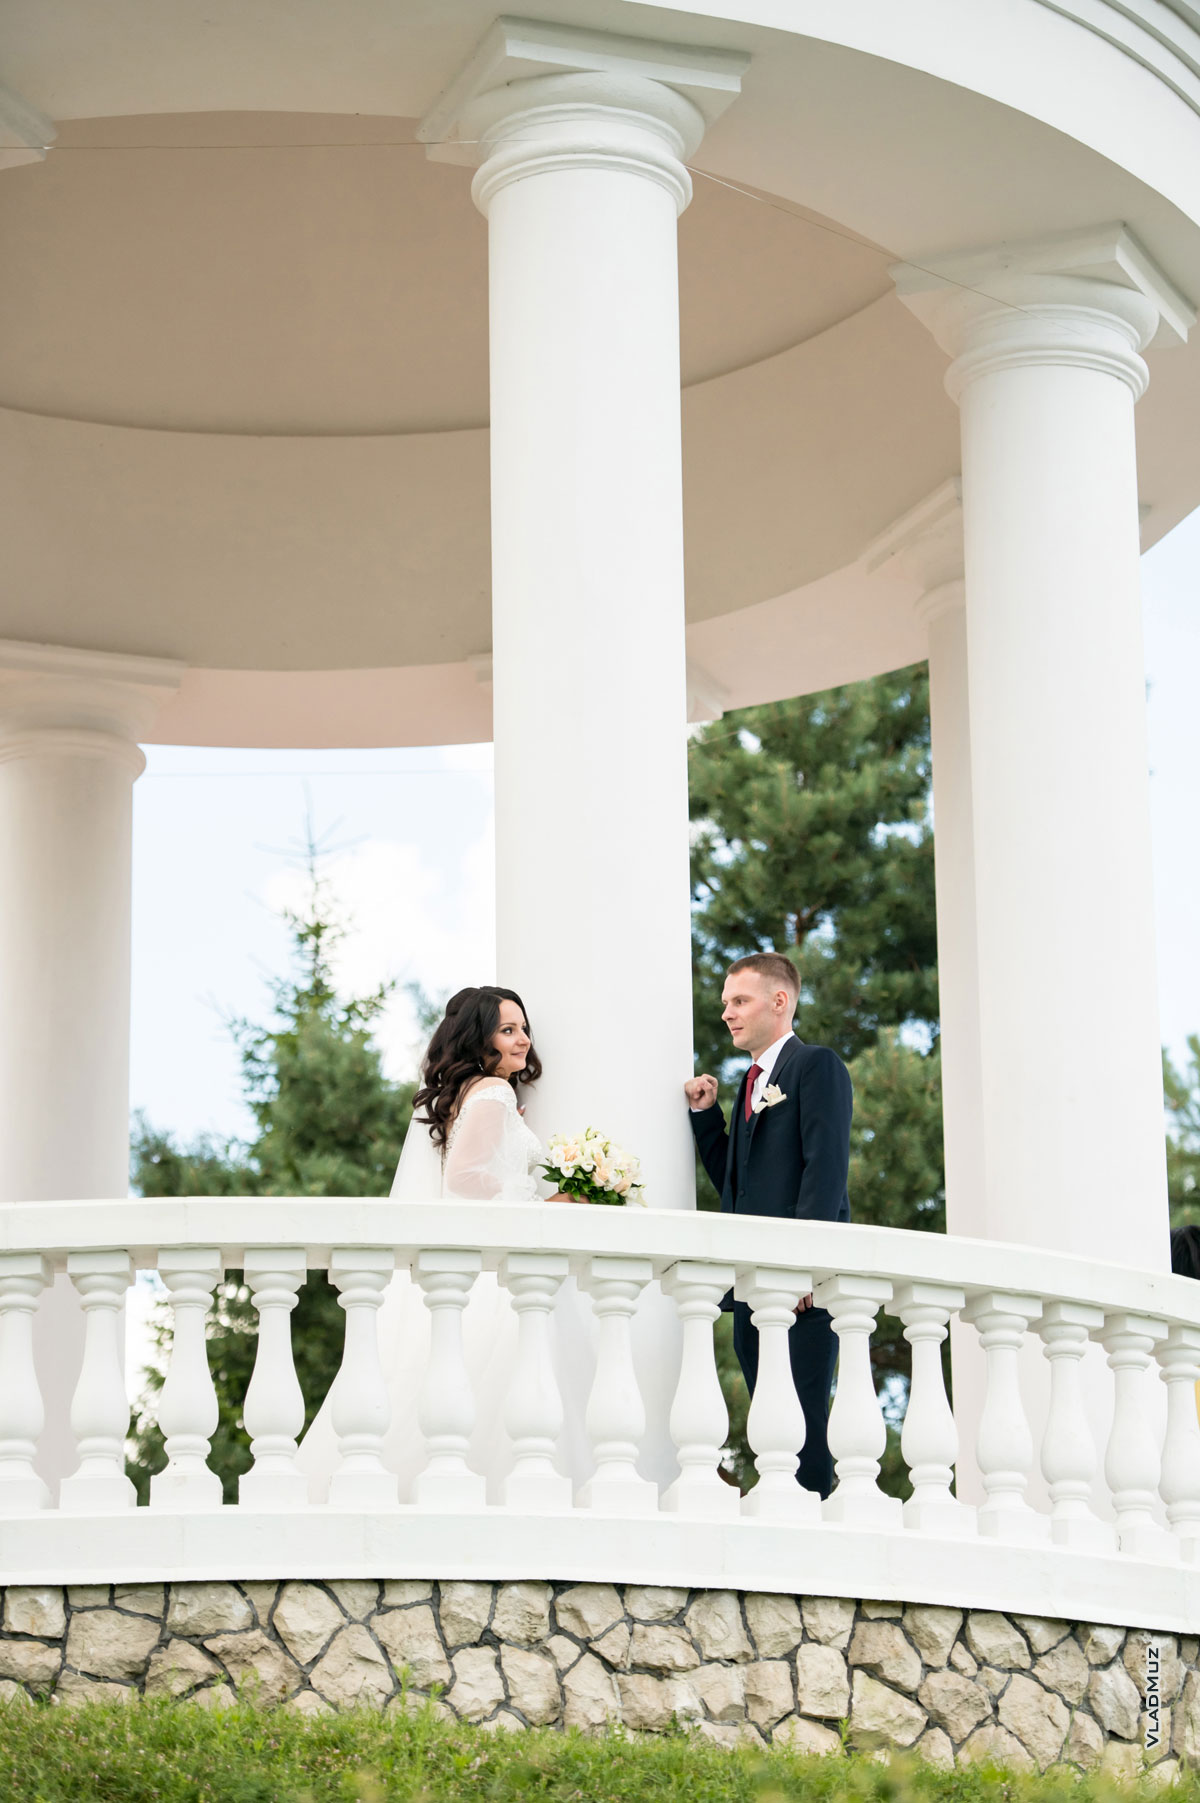 Свадебный фотосет в ротонде: жених и невеста смотрят друг на друга